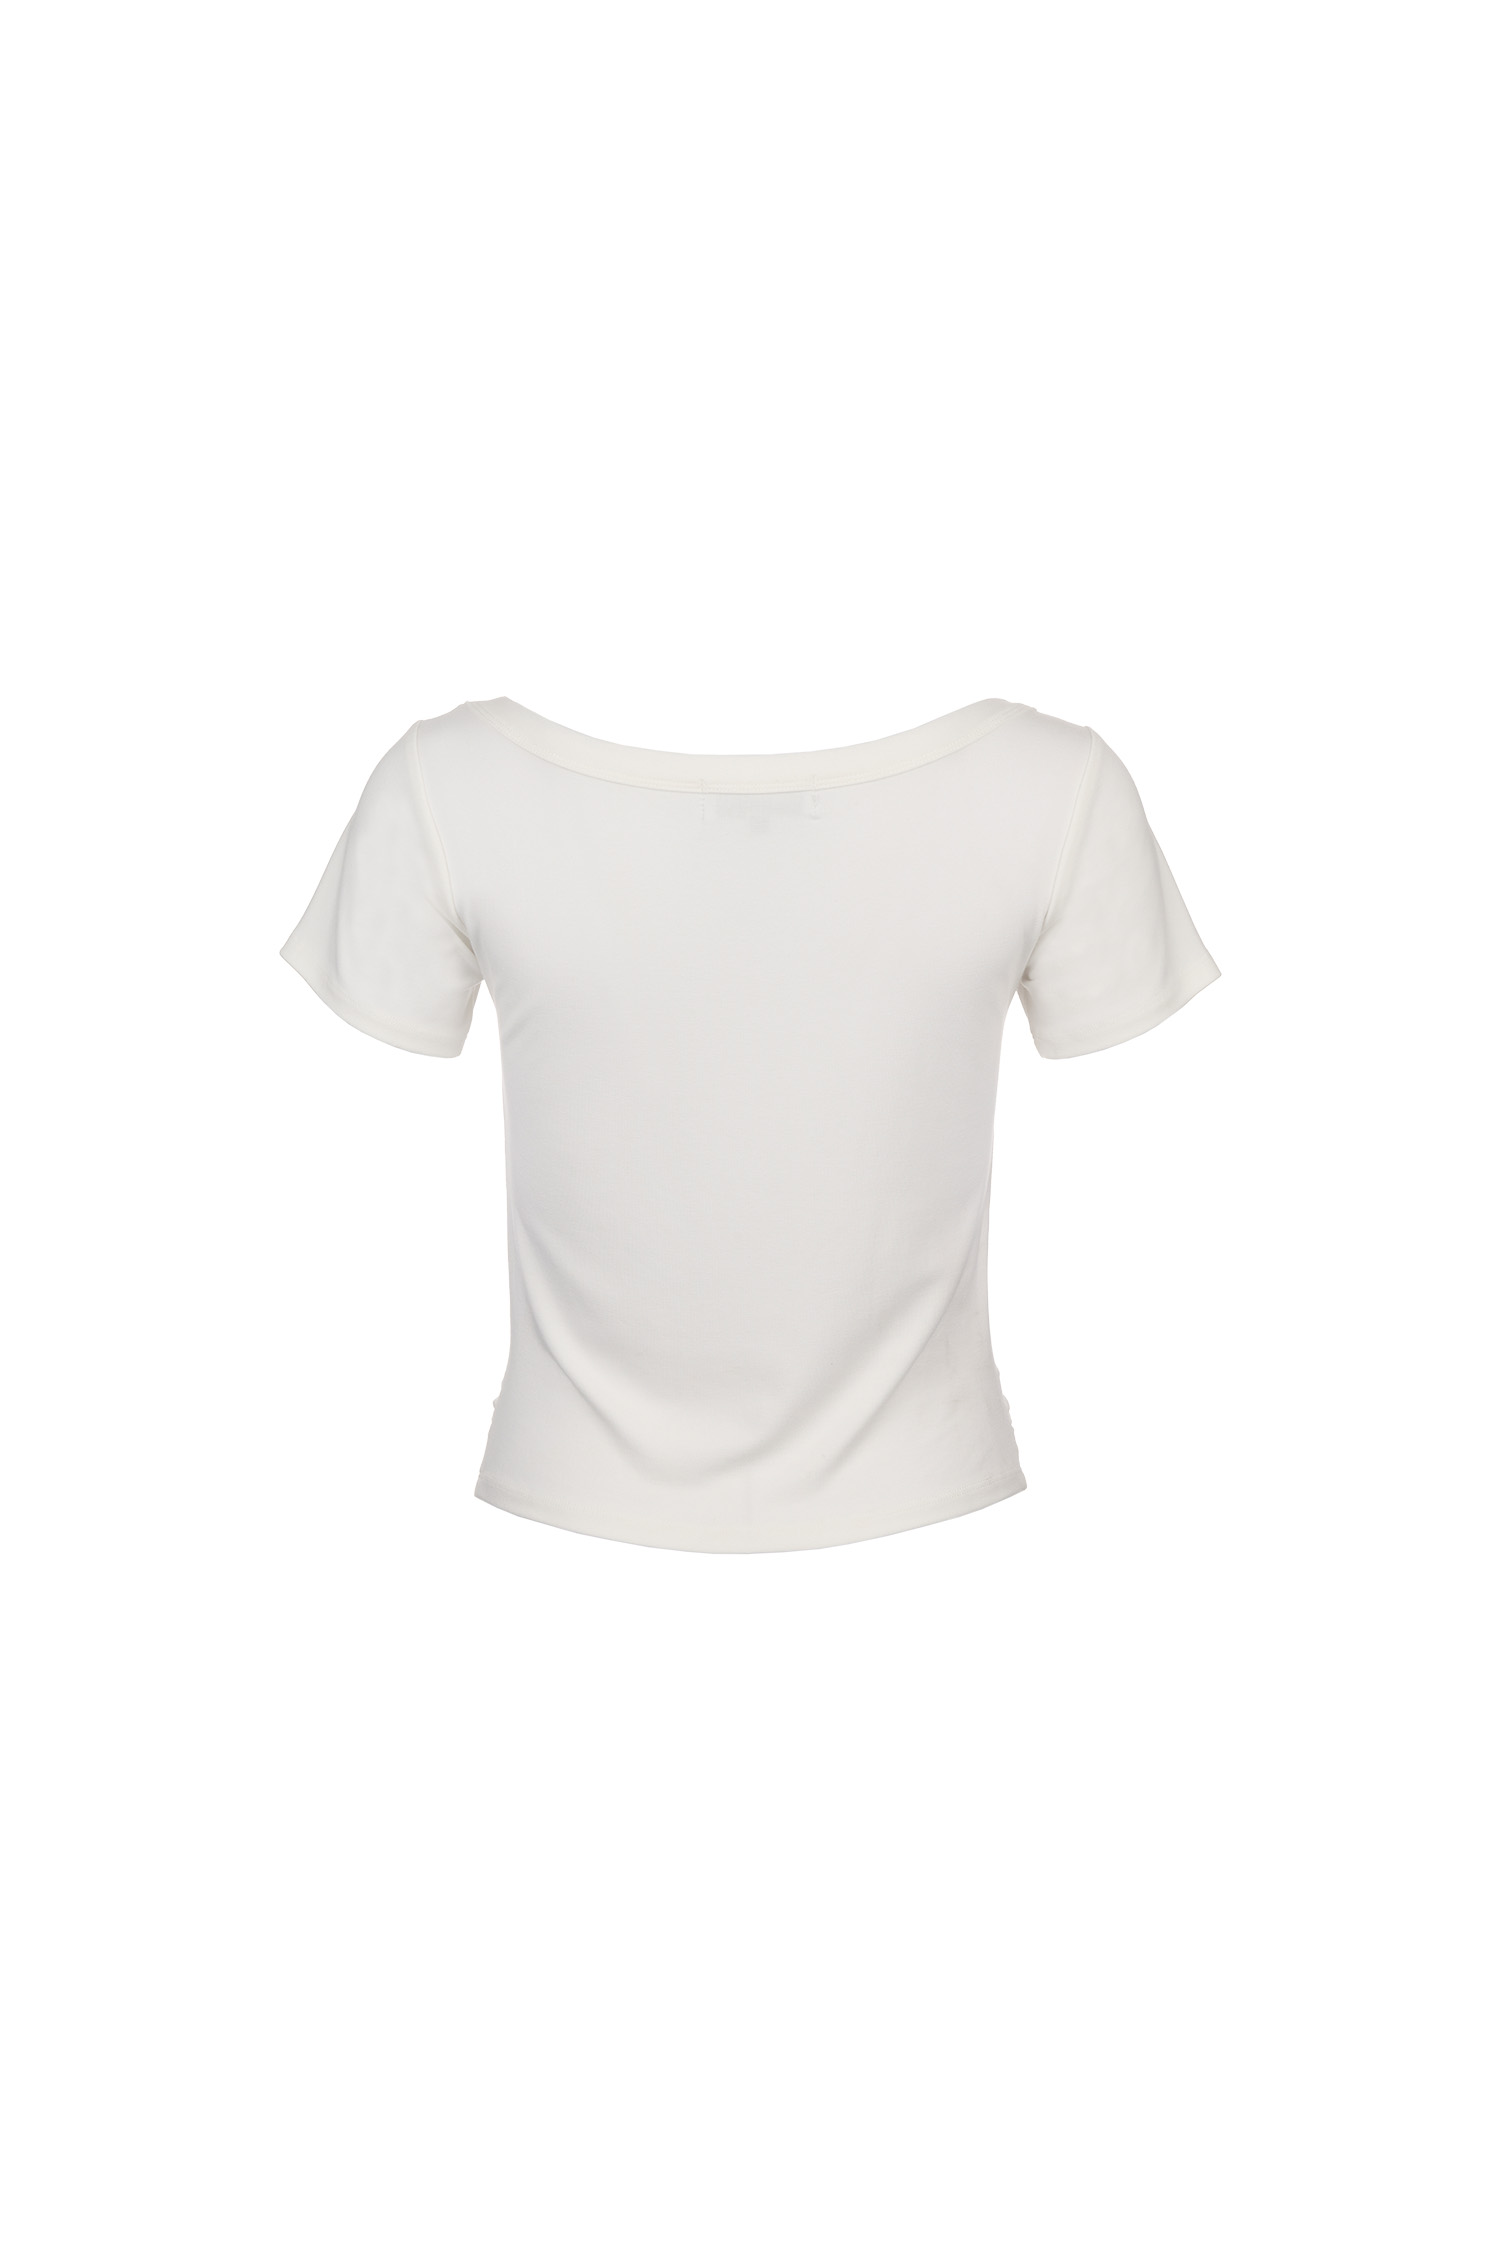 WOMAN 브이넥 셔링 하프 티셔츠 [WHITE]